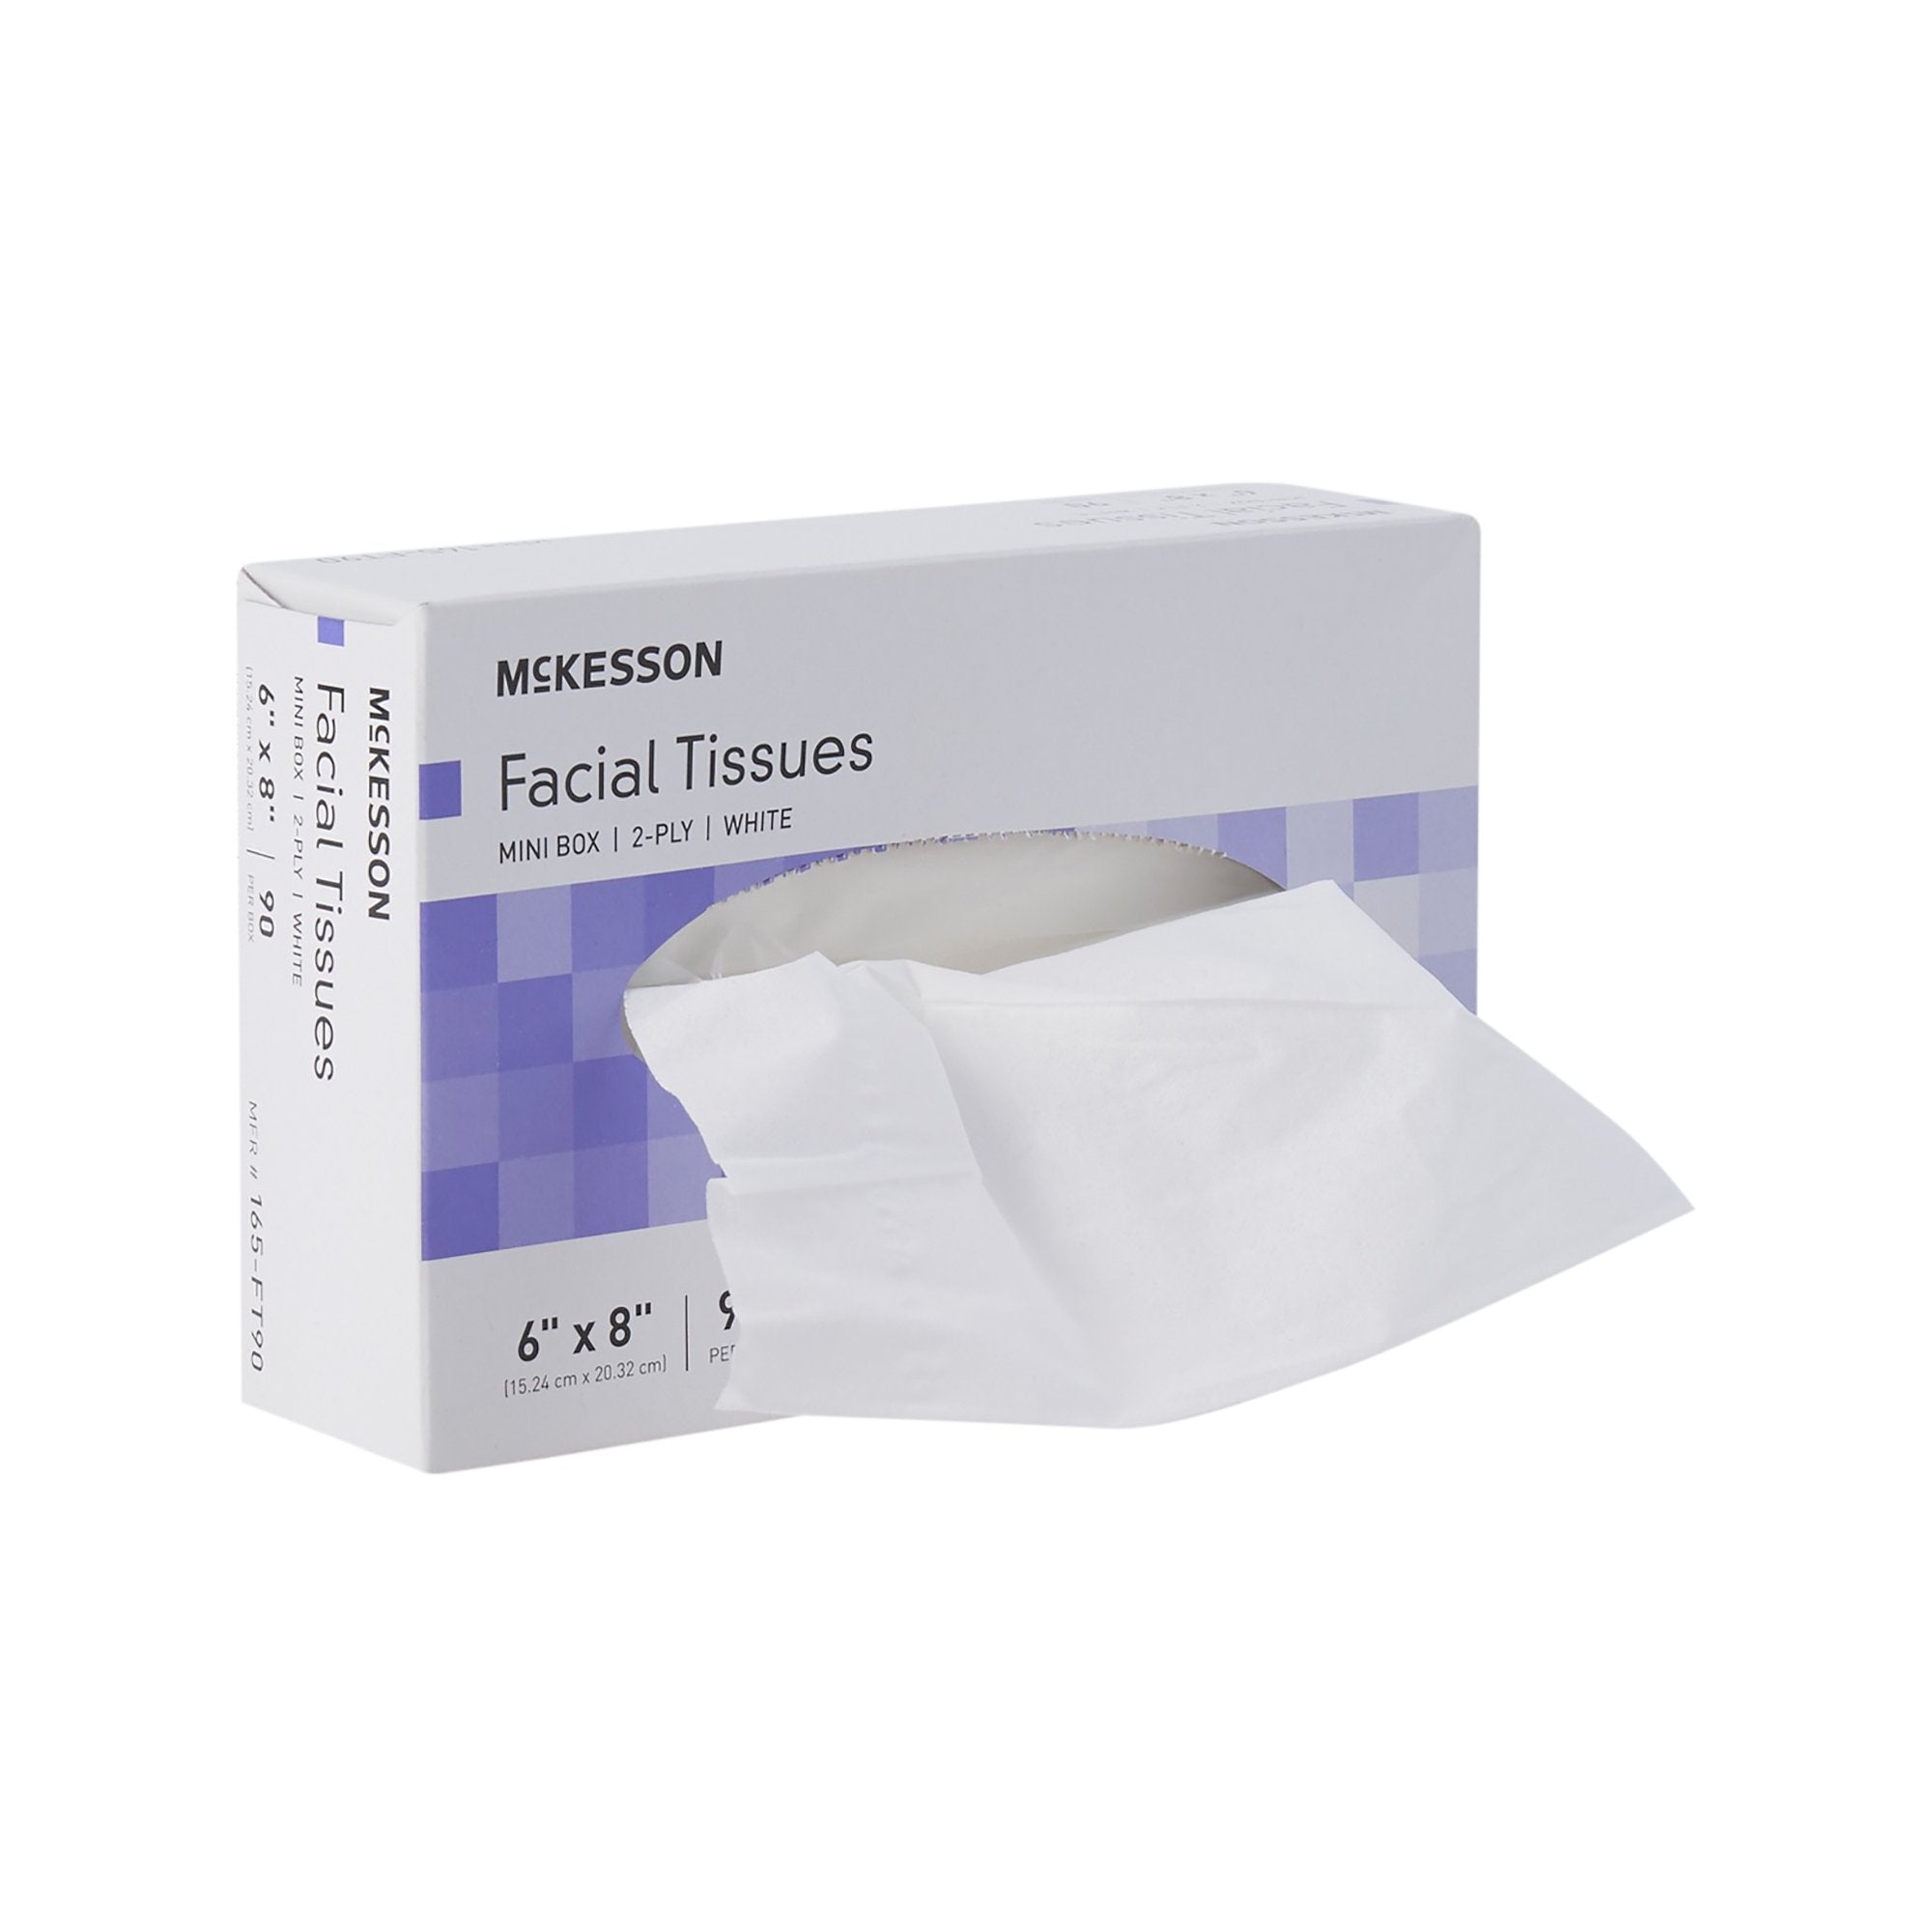 McKesson Facial Tissue White 6 X 8 Inch 90 Count